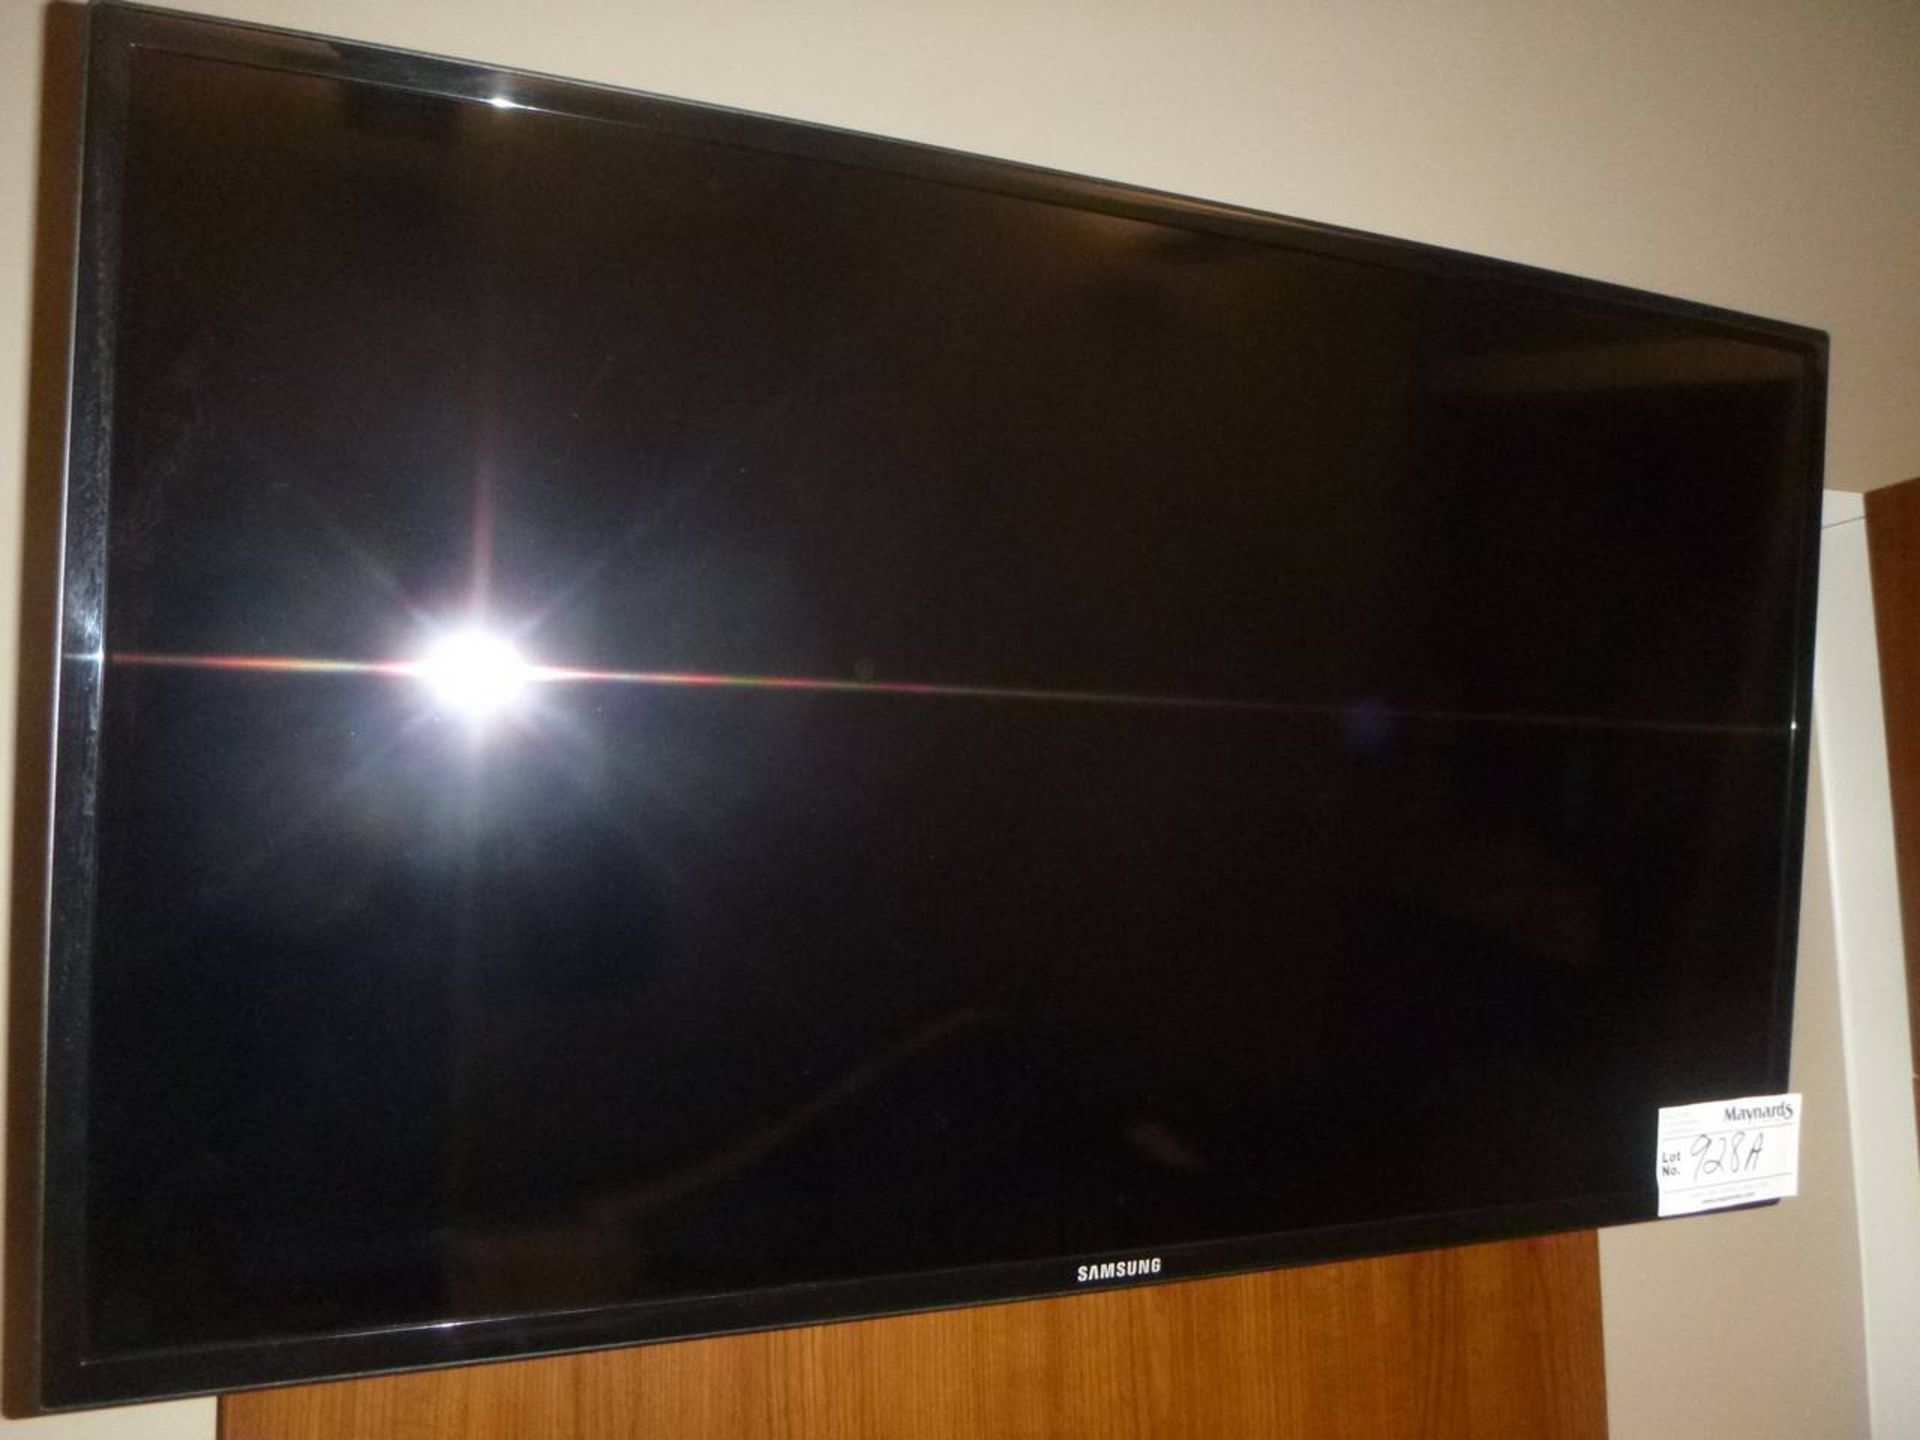 Samsung MD40B Flat screen TV